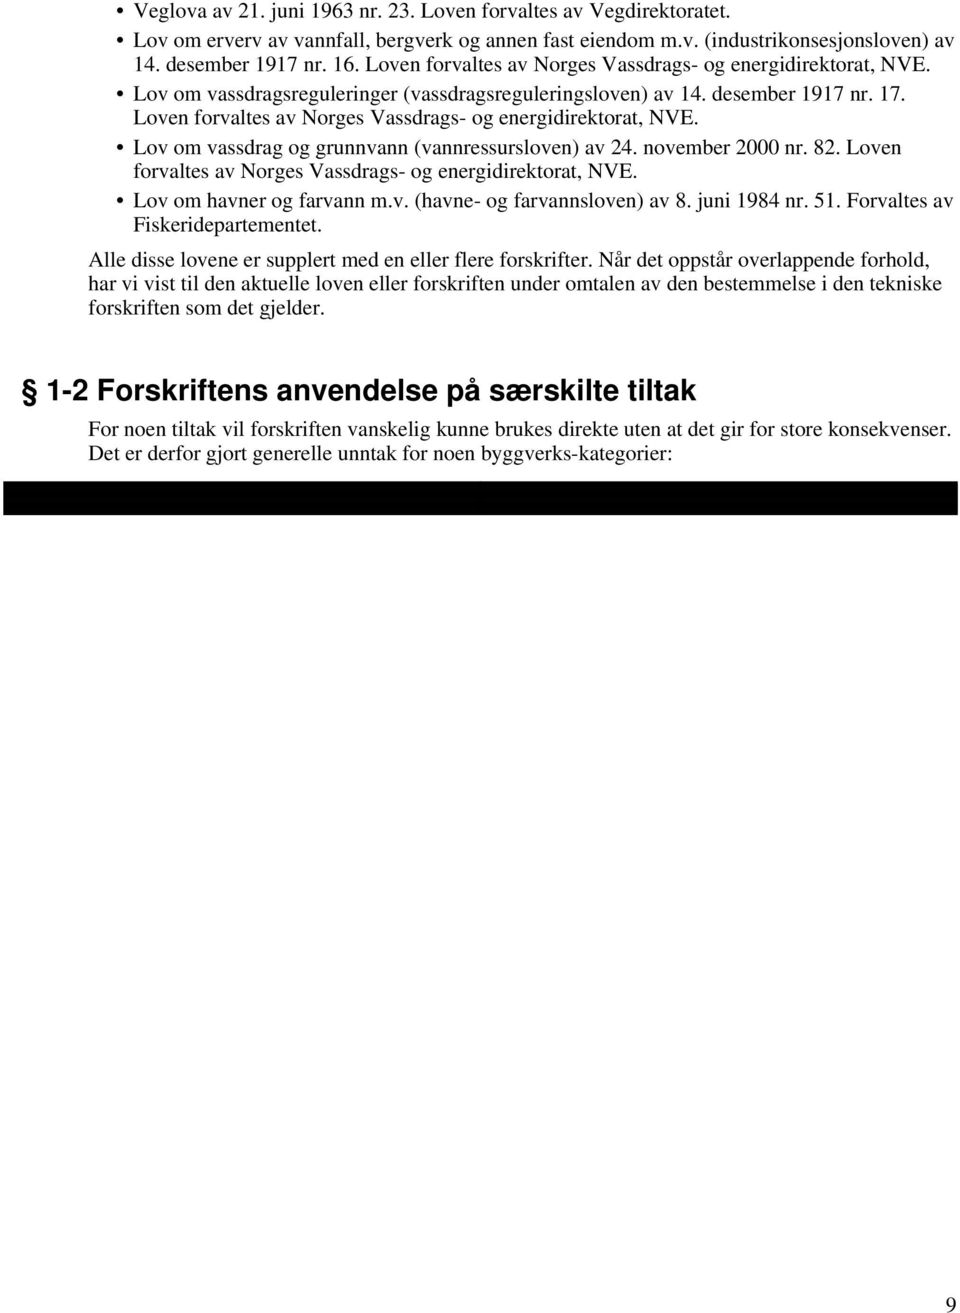 Loven forvaltes av Norges Vassdrags- og energidirektorat, NVE. Lov om vassdrag og grunnvann (vannressursloven) av 24. november 2000 nr. 82.